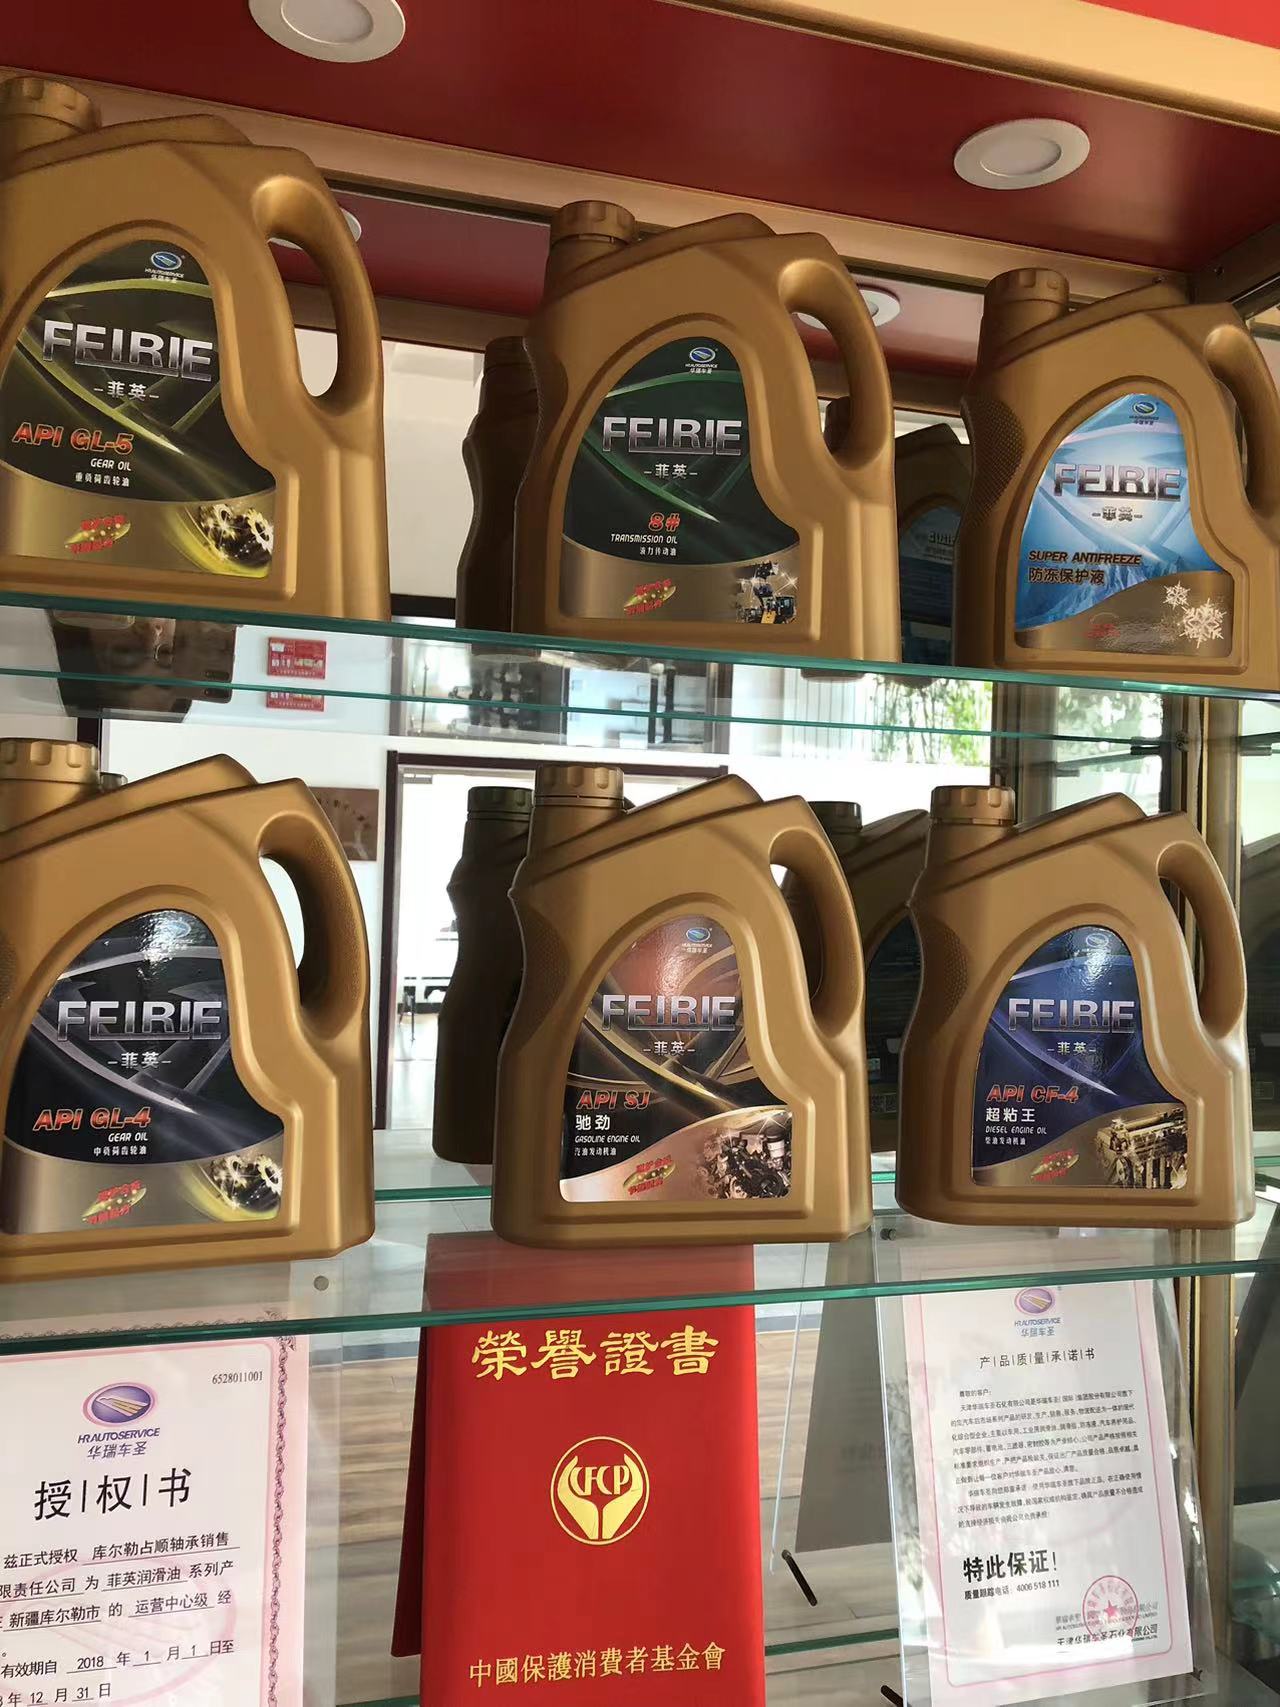 天津市菲英润滑油驰胜汽油机油质厂家菲英润滑油驰胜汽油机油质量好的机油